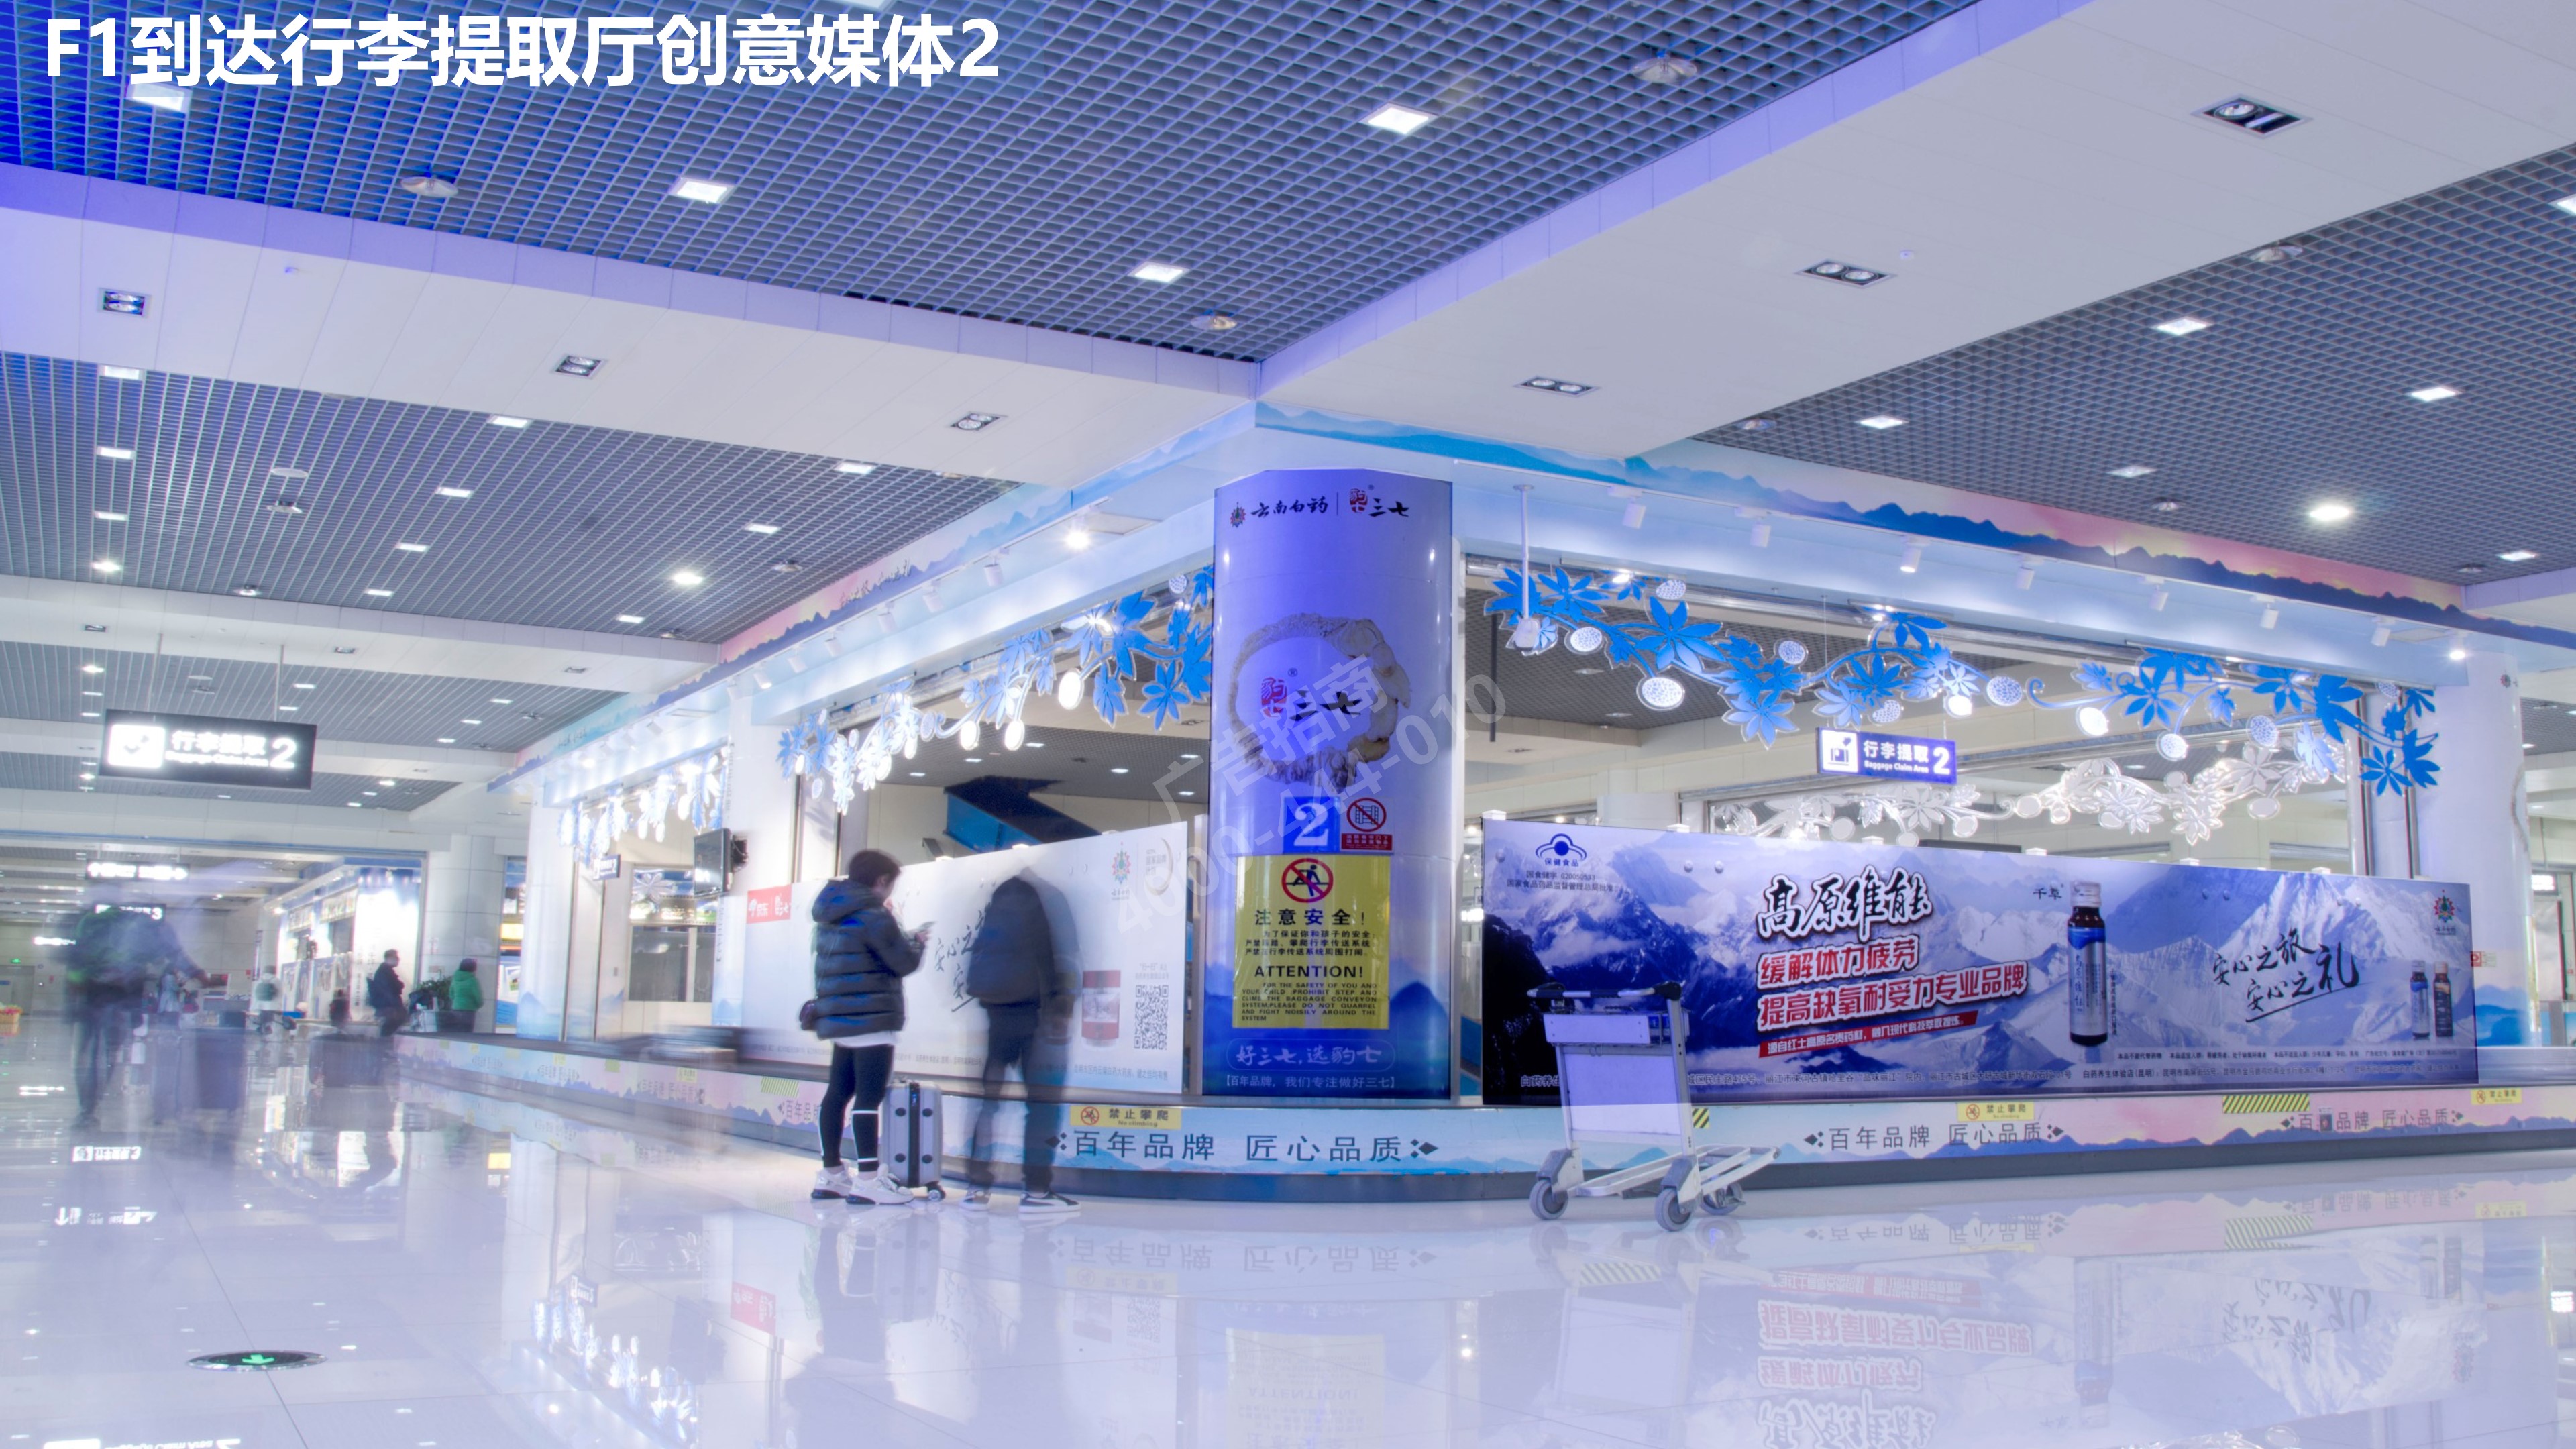 丽江机场行李厅创意媒体广告2